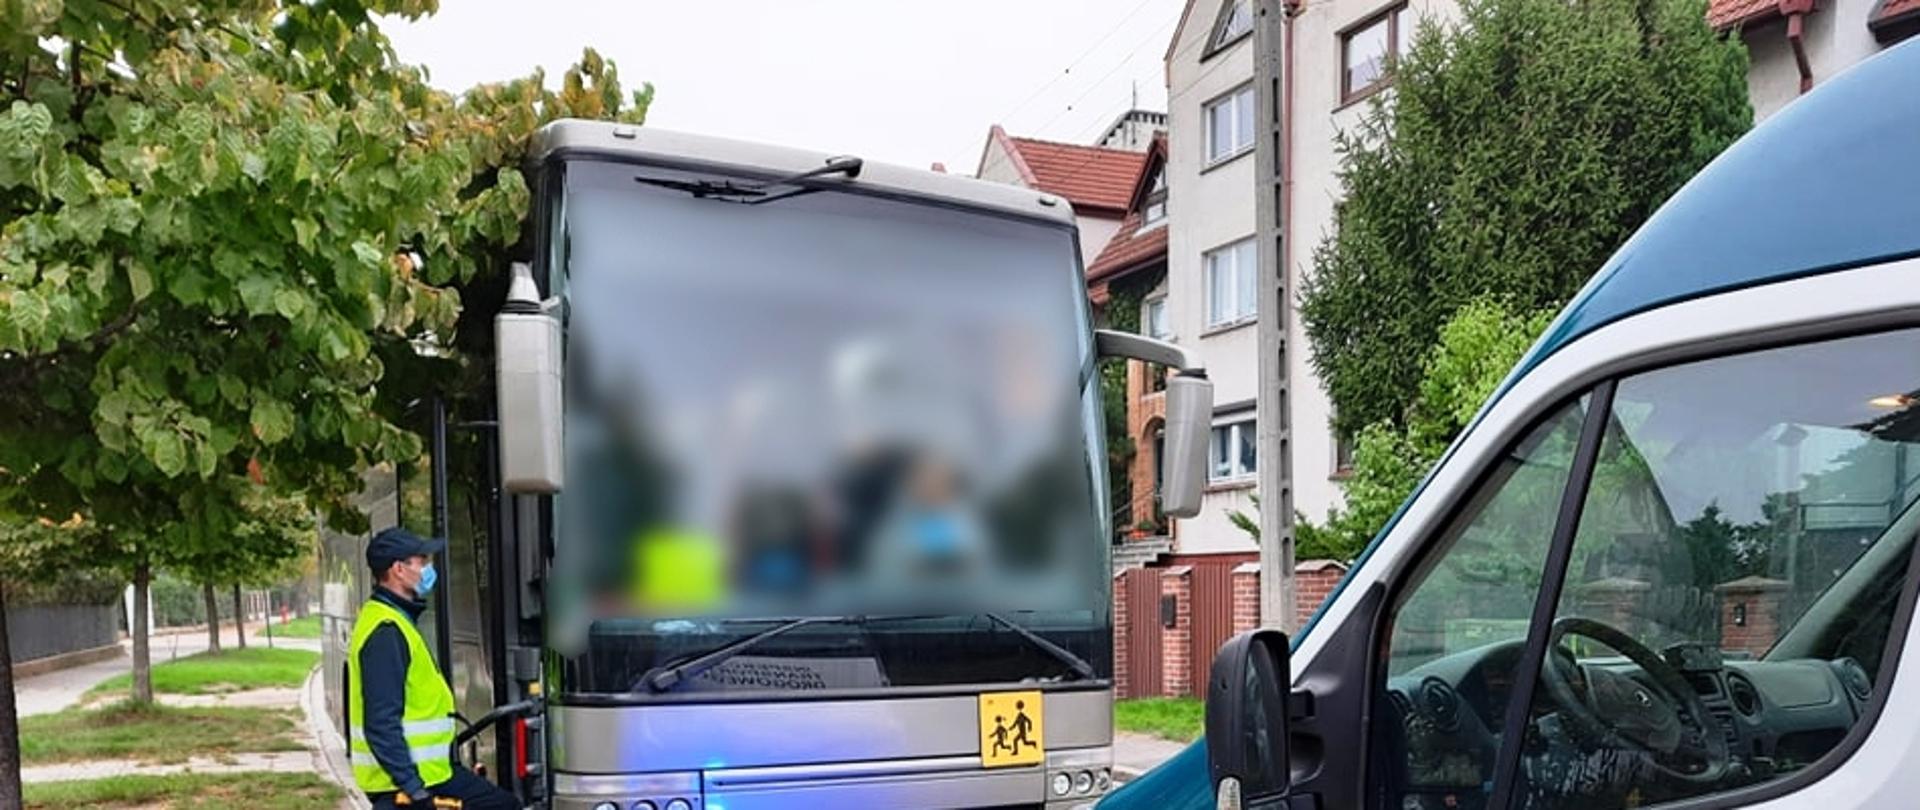 Kontrola drogowa ITD. Inspektor trzymający alkomat w dłoni stoi przed wejściem do autobusu. Przed autobusem stoi radiowóz ITD.